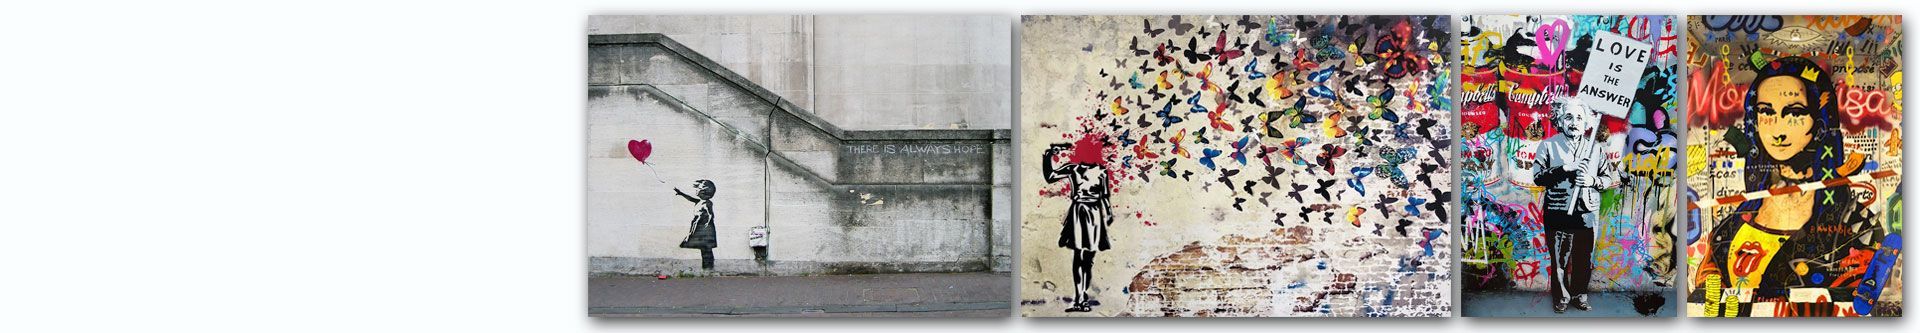 Obrazy Banksy street art, obrazy graffiti, Banksy reprodukcje, Banksy graffiti, Banksy art, Banksy obraz na płótnie, obrazy Banksyego, obraz street art, graffiti na płótnie, Banksy canvas, obraz dziewczynka z balonem, obraz graffiti - sklep Grafiki Obrazy